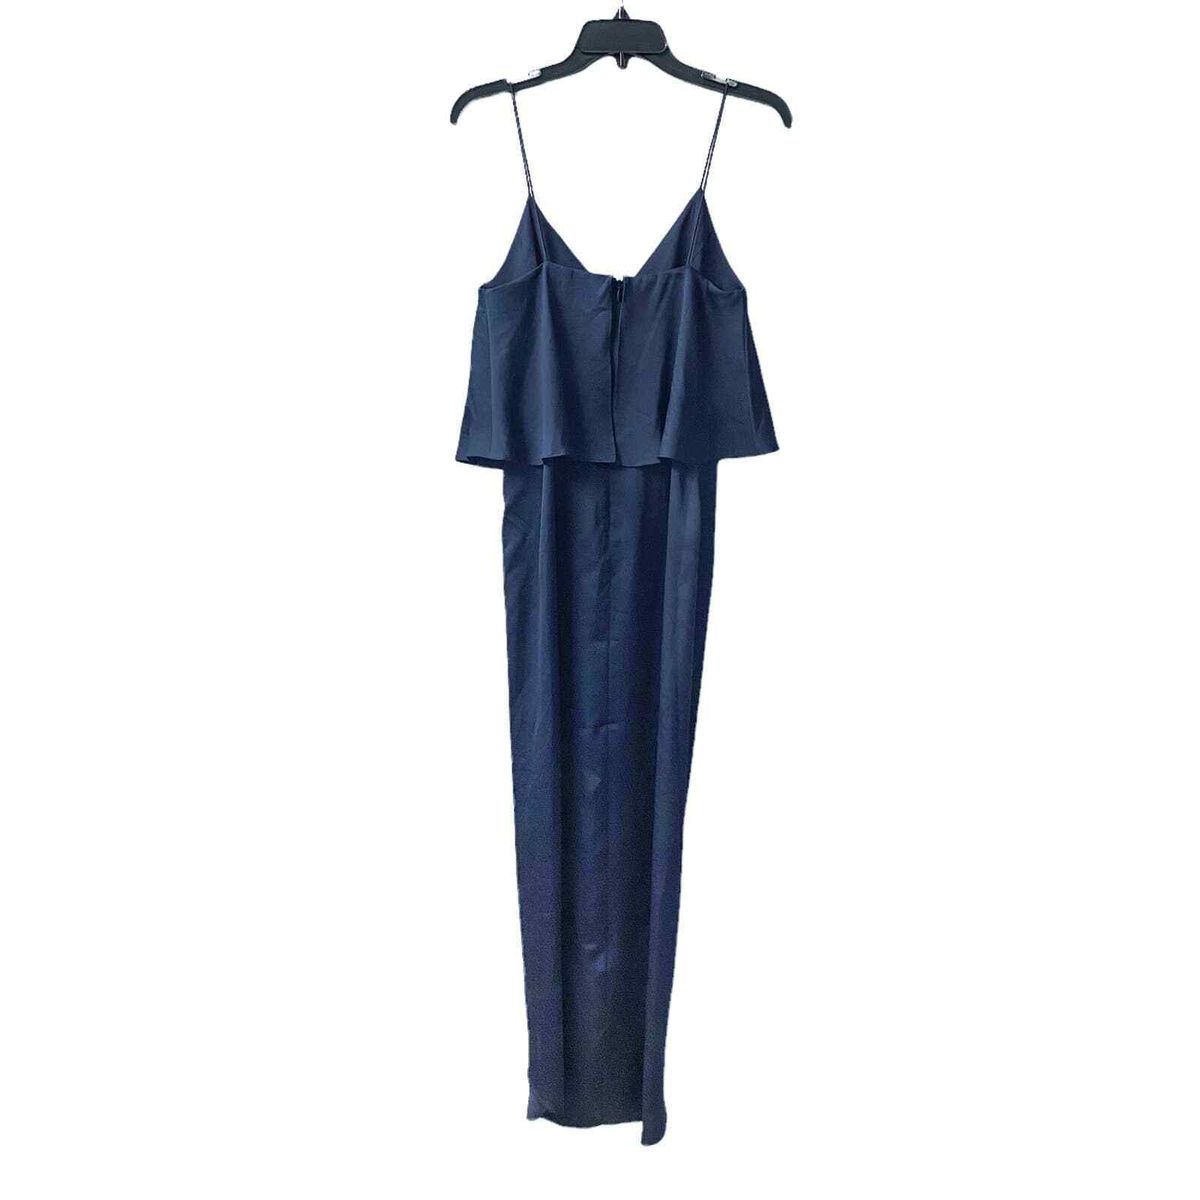 Style SJ3499 Shona Joy Size 2 Satin Blue Side Slit Dress on Queenly